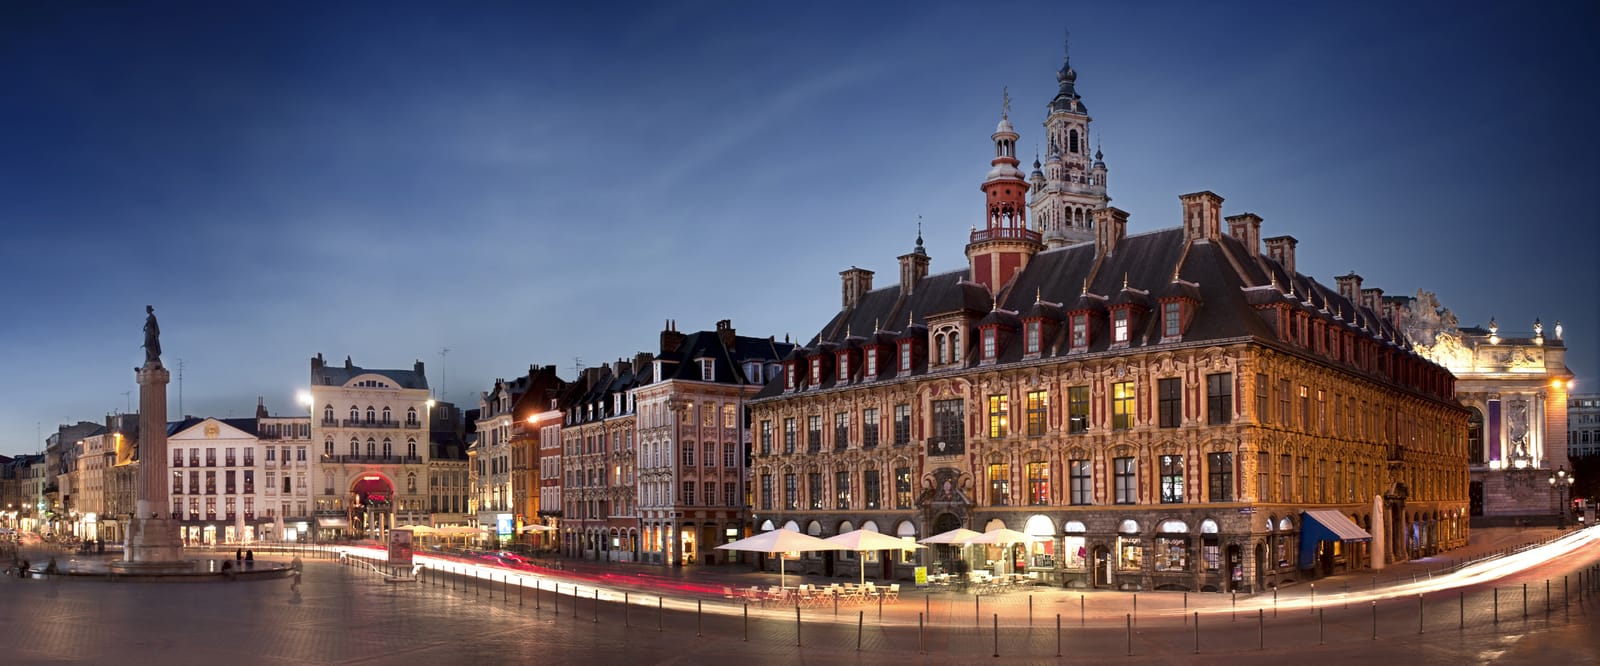 Descopera Lille, Franta I Itinerar de 3 zile